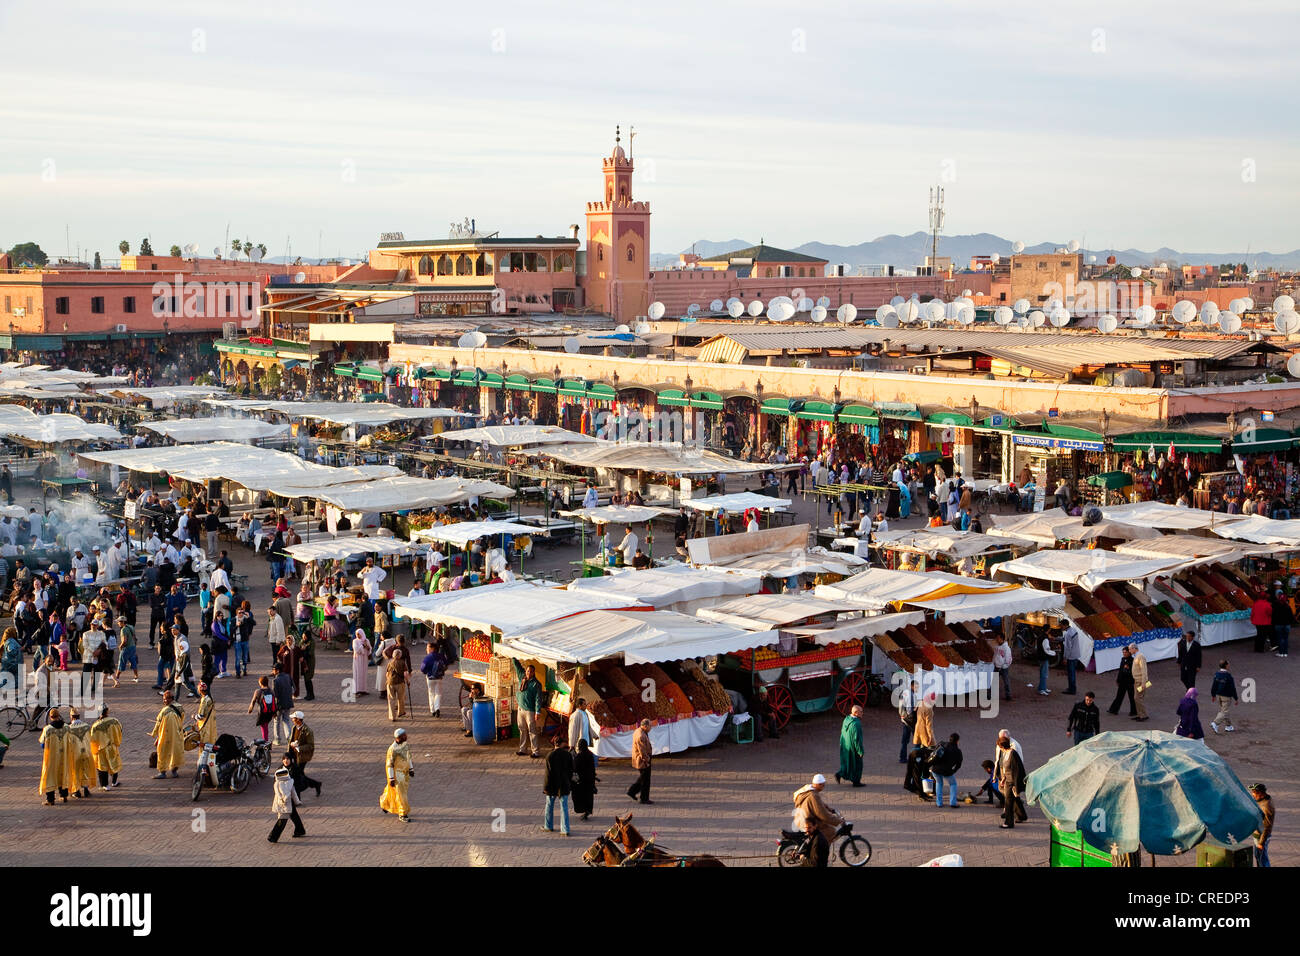 Essen und Markt Stände in Djemaa El Fna Platz, Medina oder Altstadt, UNESCO-Weltkulturerbe, Marrakesch, Marokko, Afrika Stockfoto